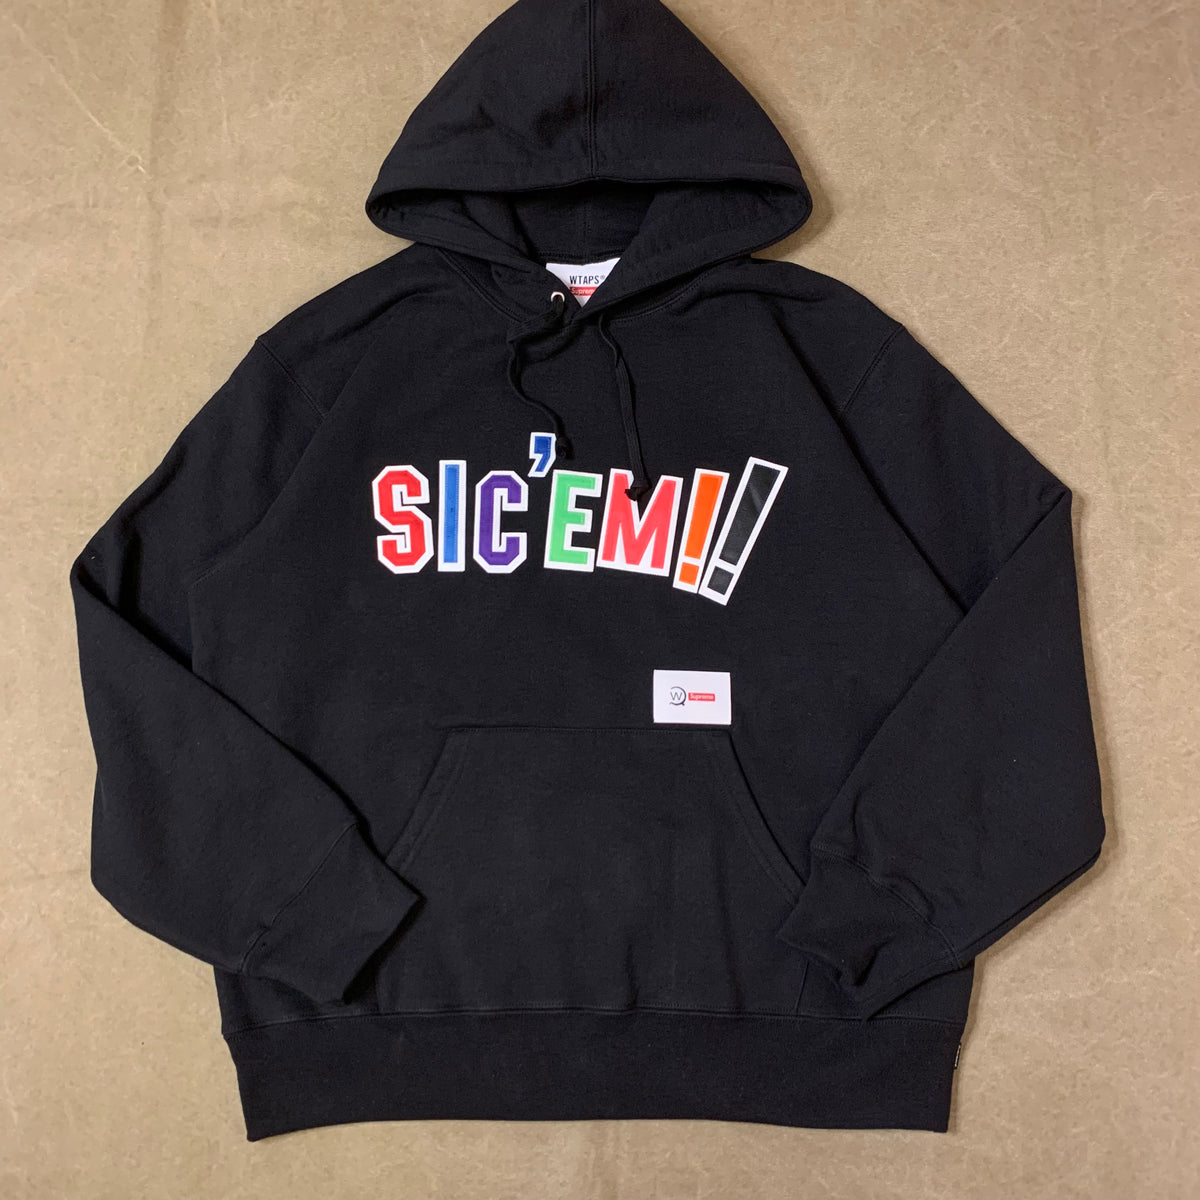 200円引き〜9999円Supreme®/WTAPS® Sic’em Hooded Sweatshirt